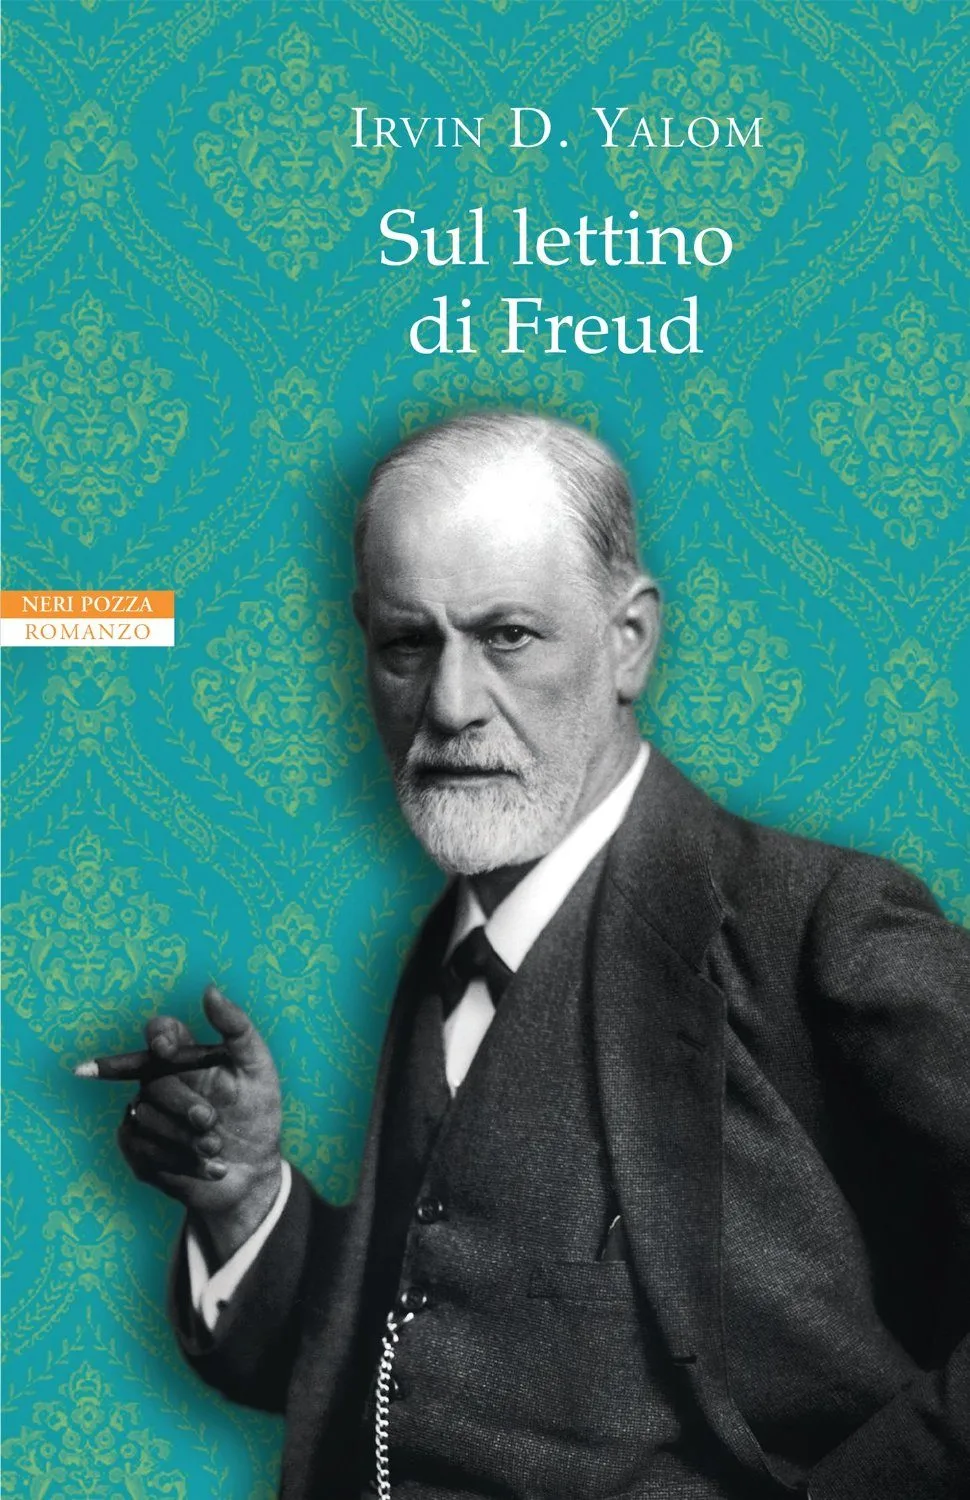 Sul lettino di Freud di Irvin D. Yalom (2015) - Recensione